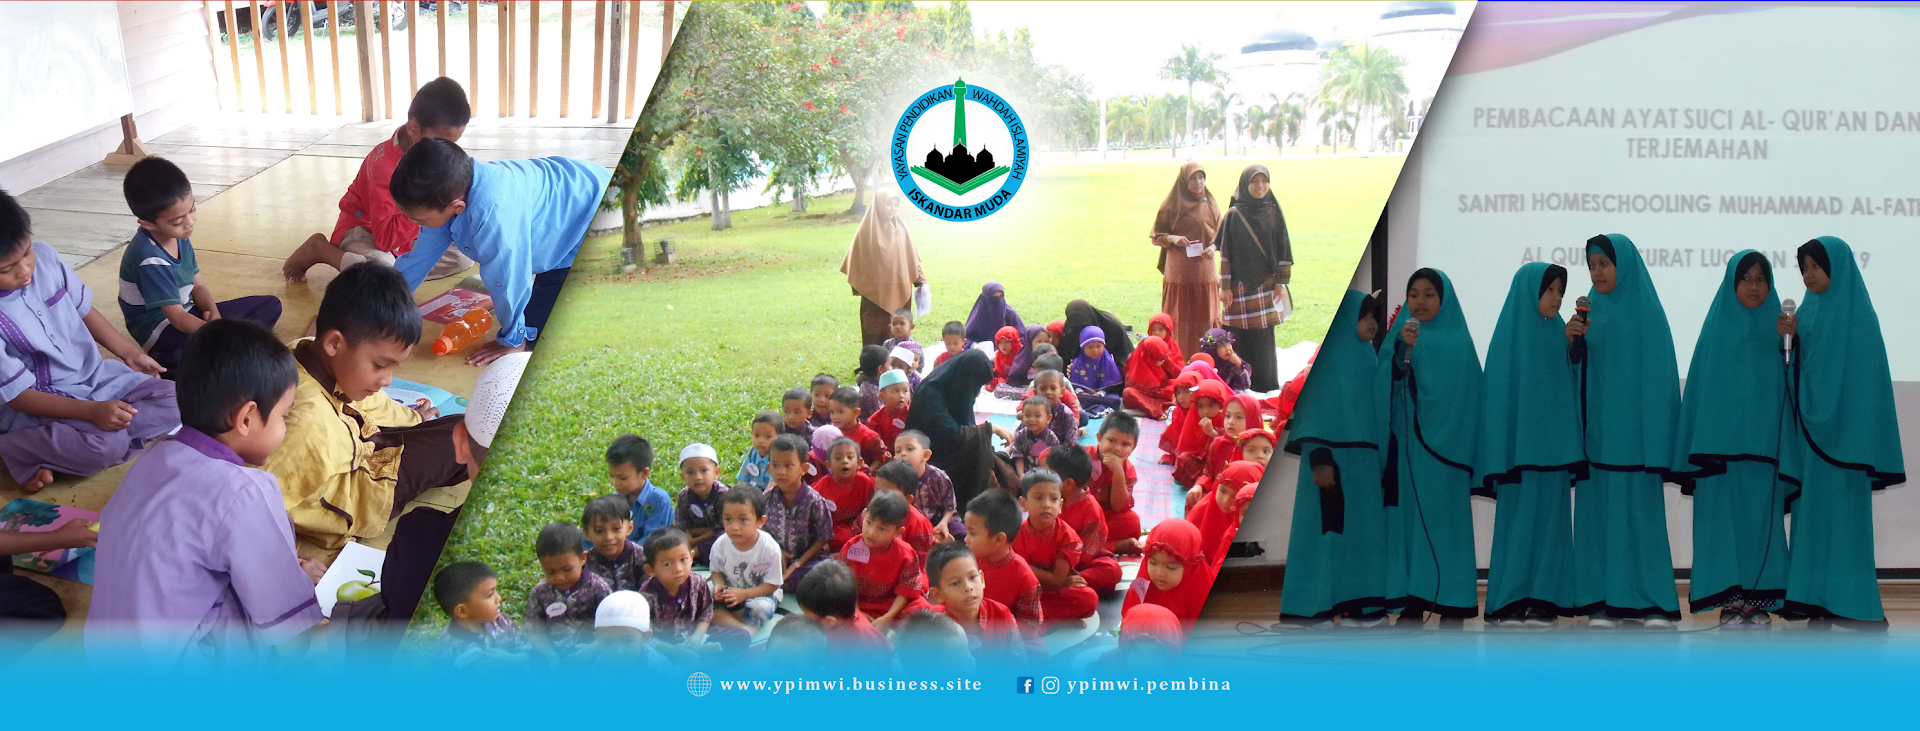 Yayasan Pendidikan Iskandar Muda Wahdah Islamiyah (pembina) Photo